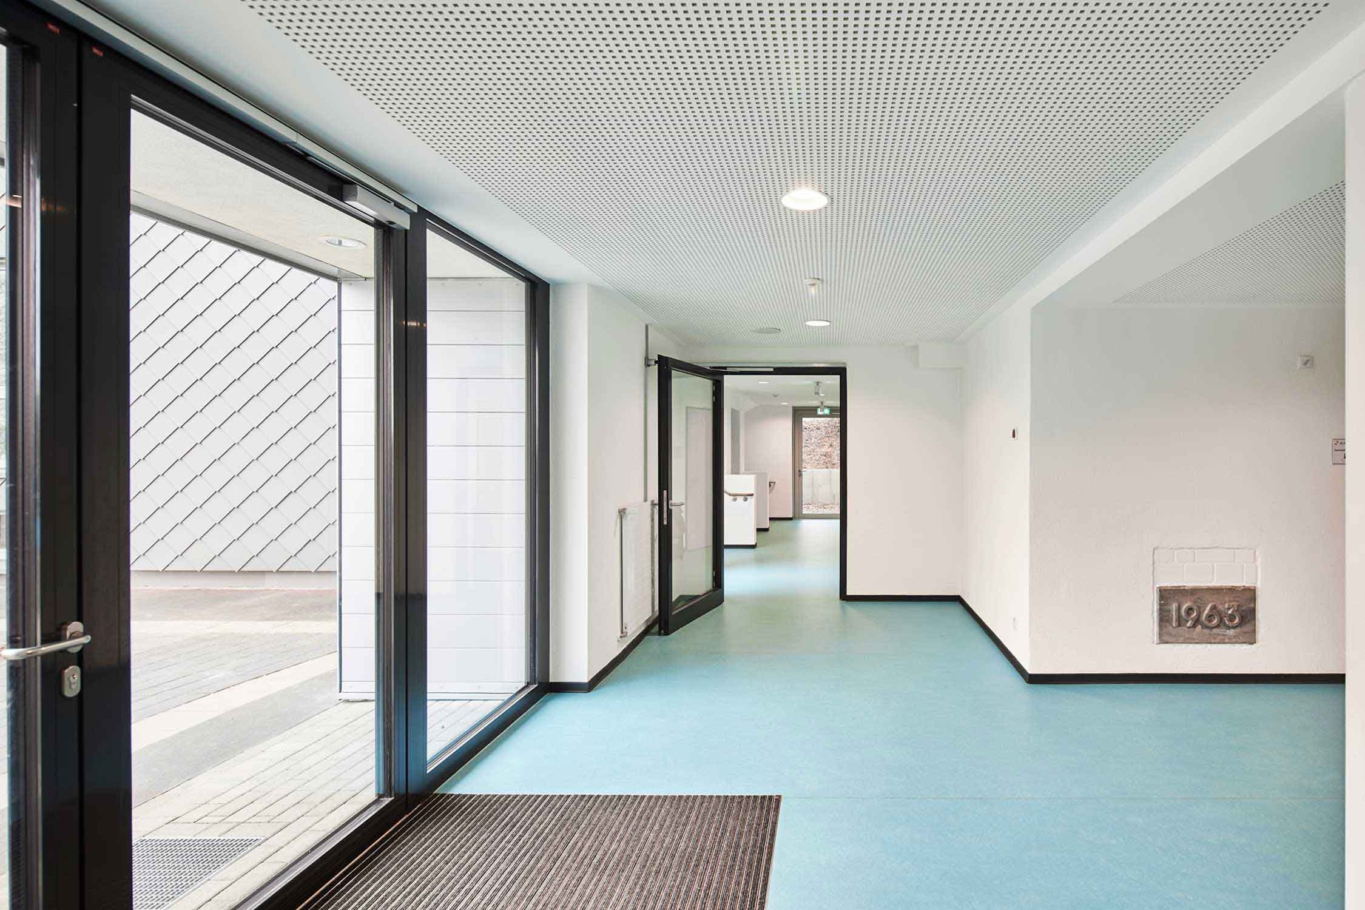 Architekturfotografie: Modern gelöste Sanierung und Erweiterung einer Förderschule in Alfter bei Bonn. Der Flur in hellblau verbindet die einzelnen Bereiche.